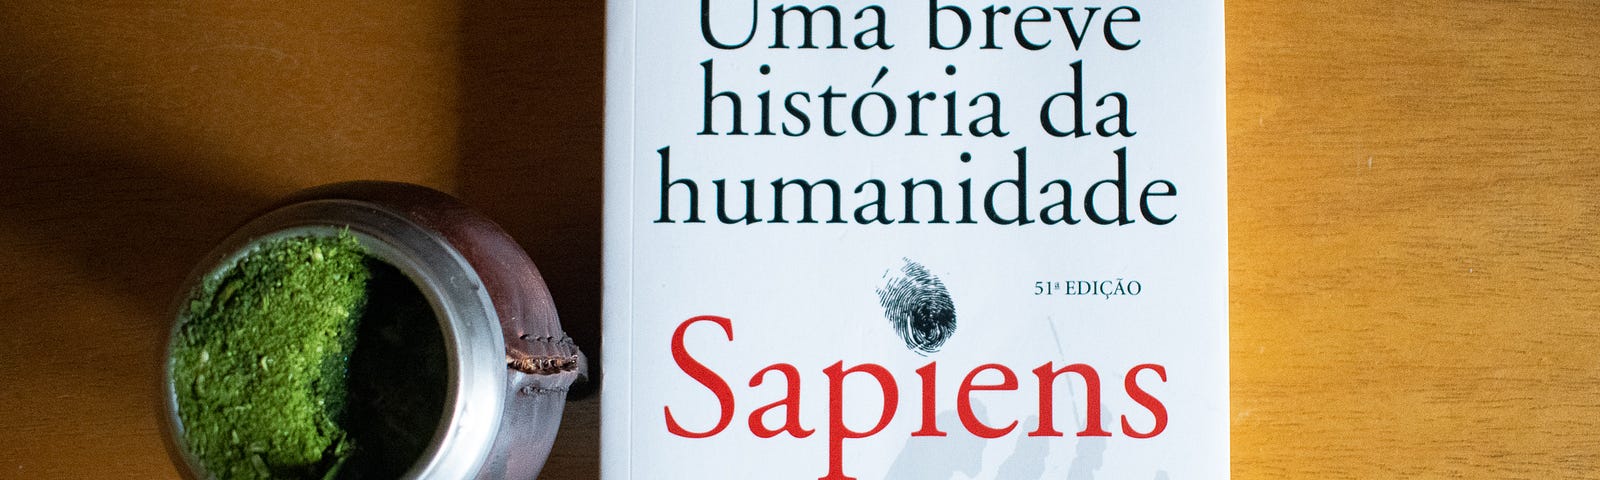 O livro Uma breve história da humanidade repousa numa mesa ao lado de um chimarrão.